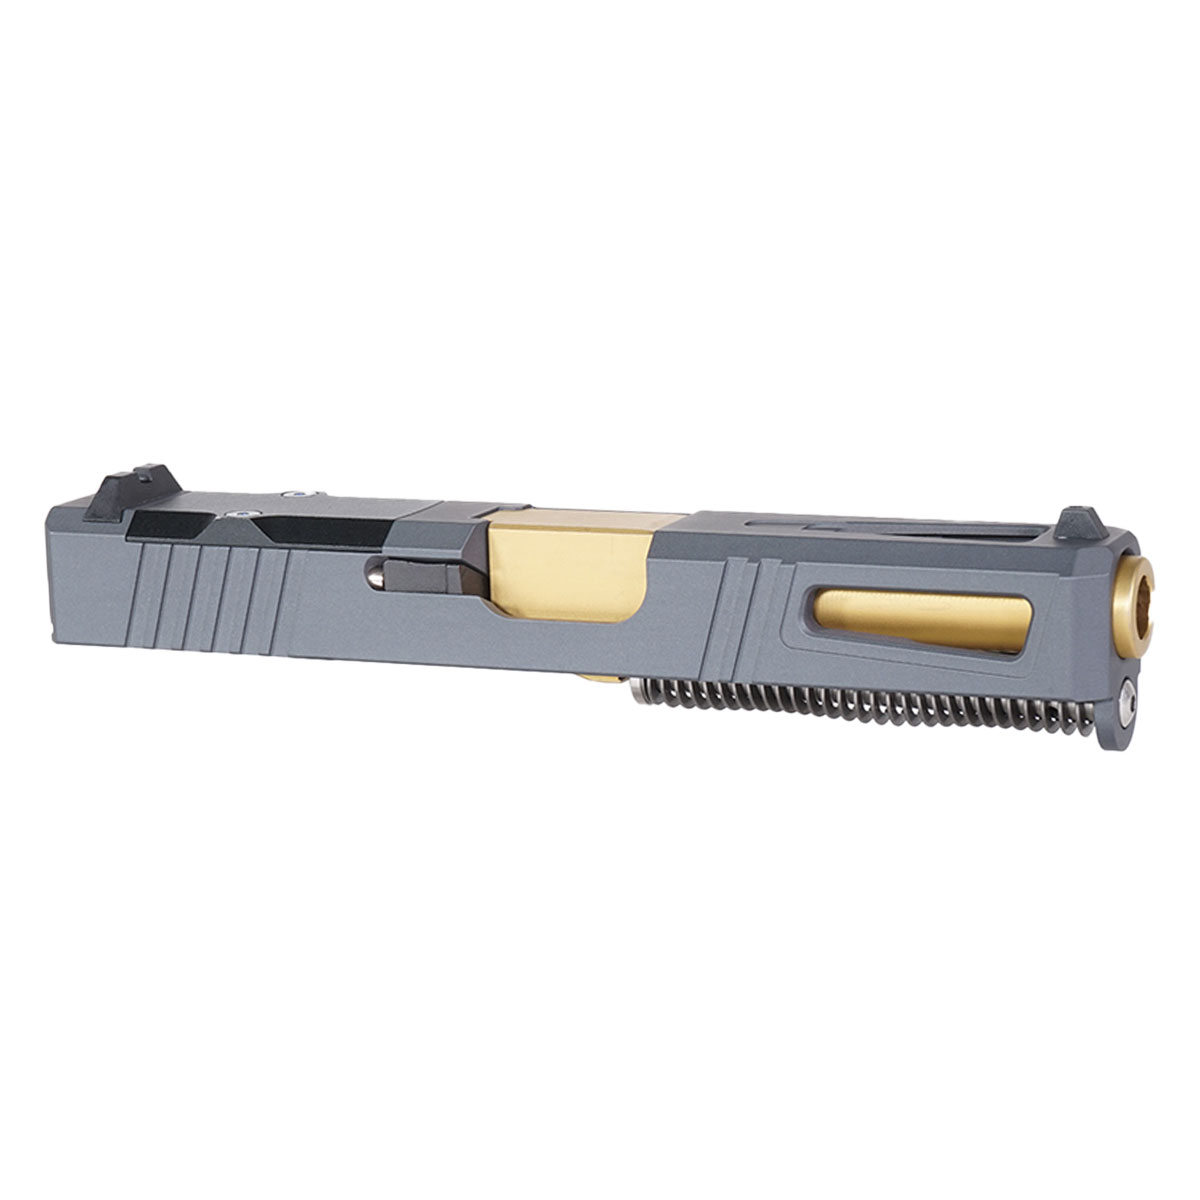 DD 'Gold Strike' 9mm Complete Slide Kit - Glock 19 Gen 1-3 Compatible